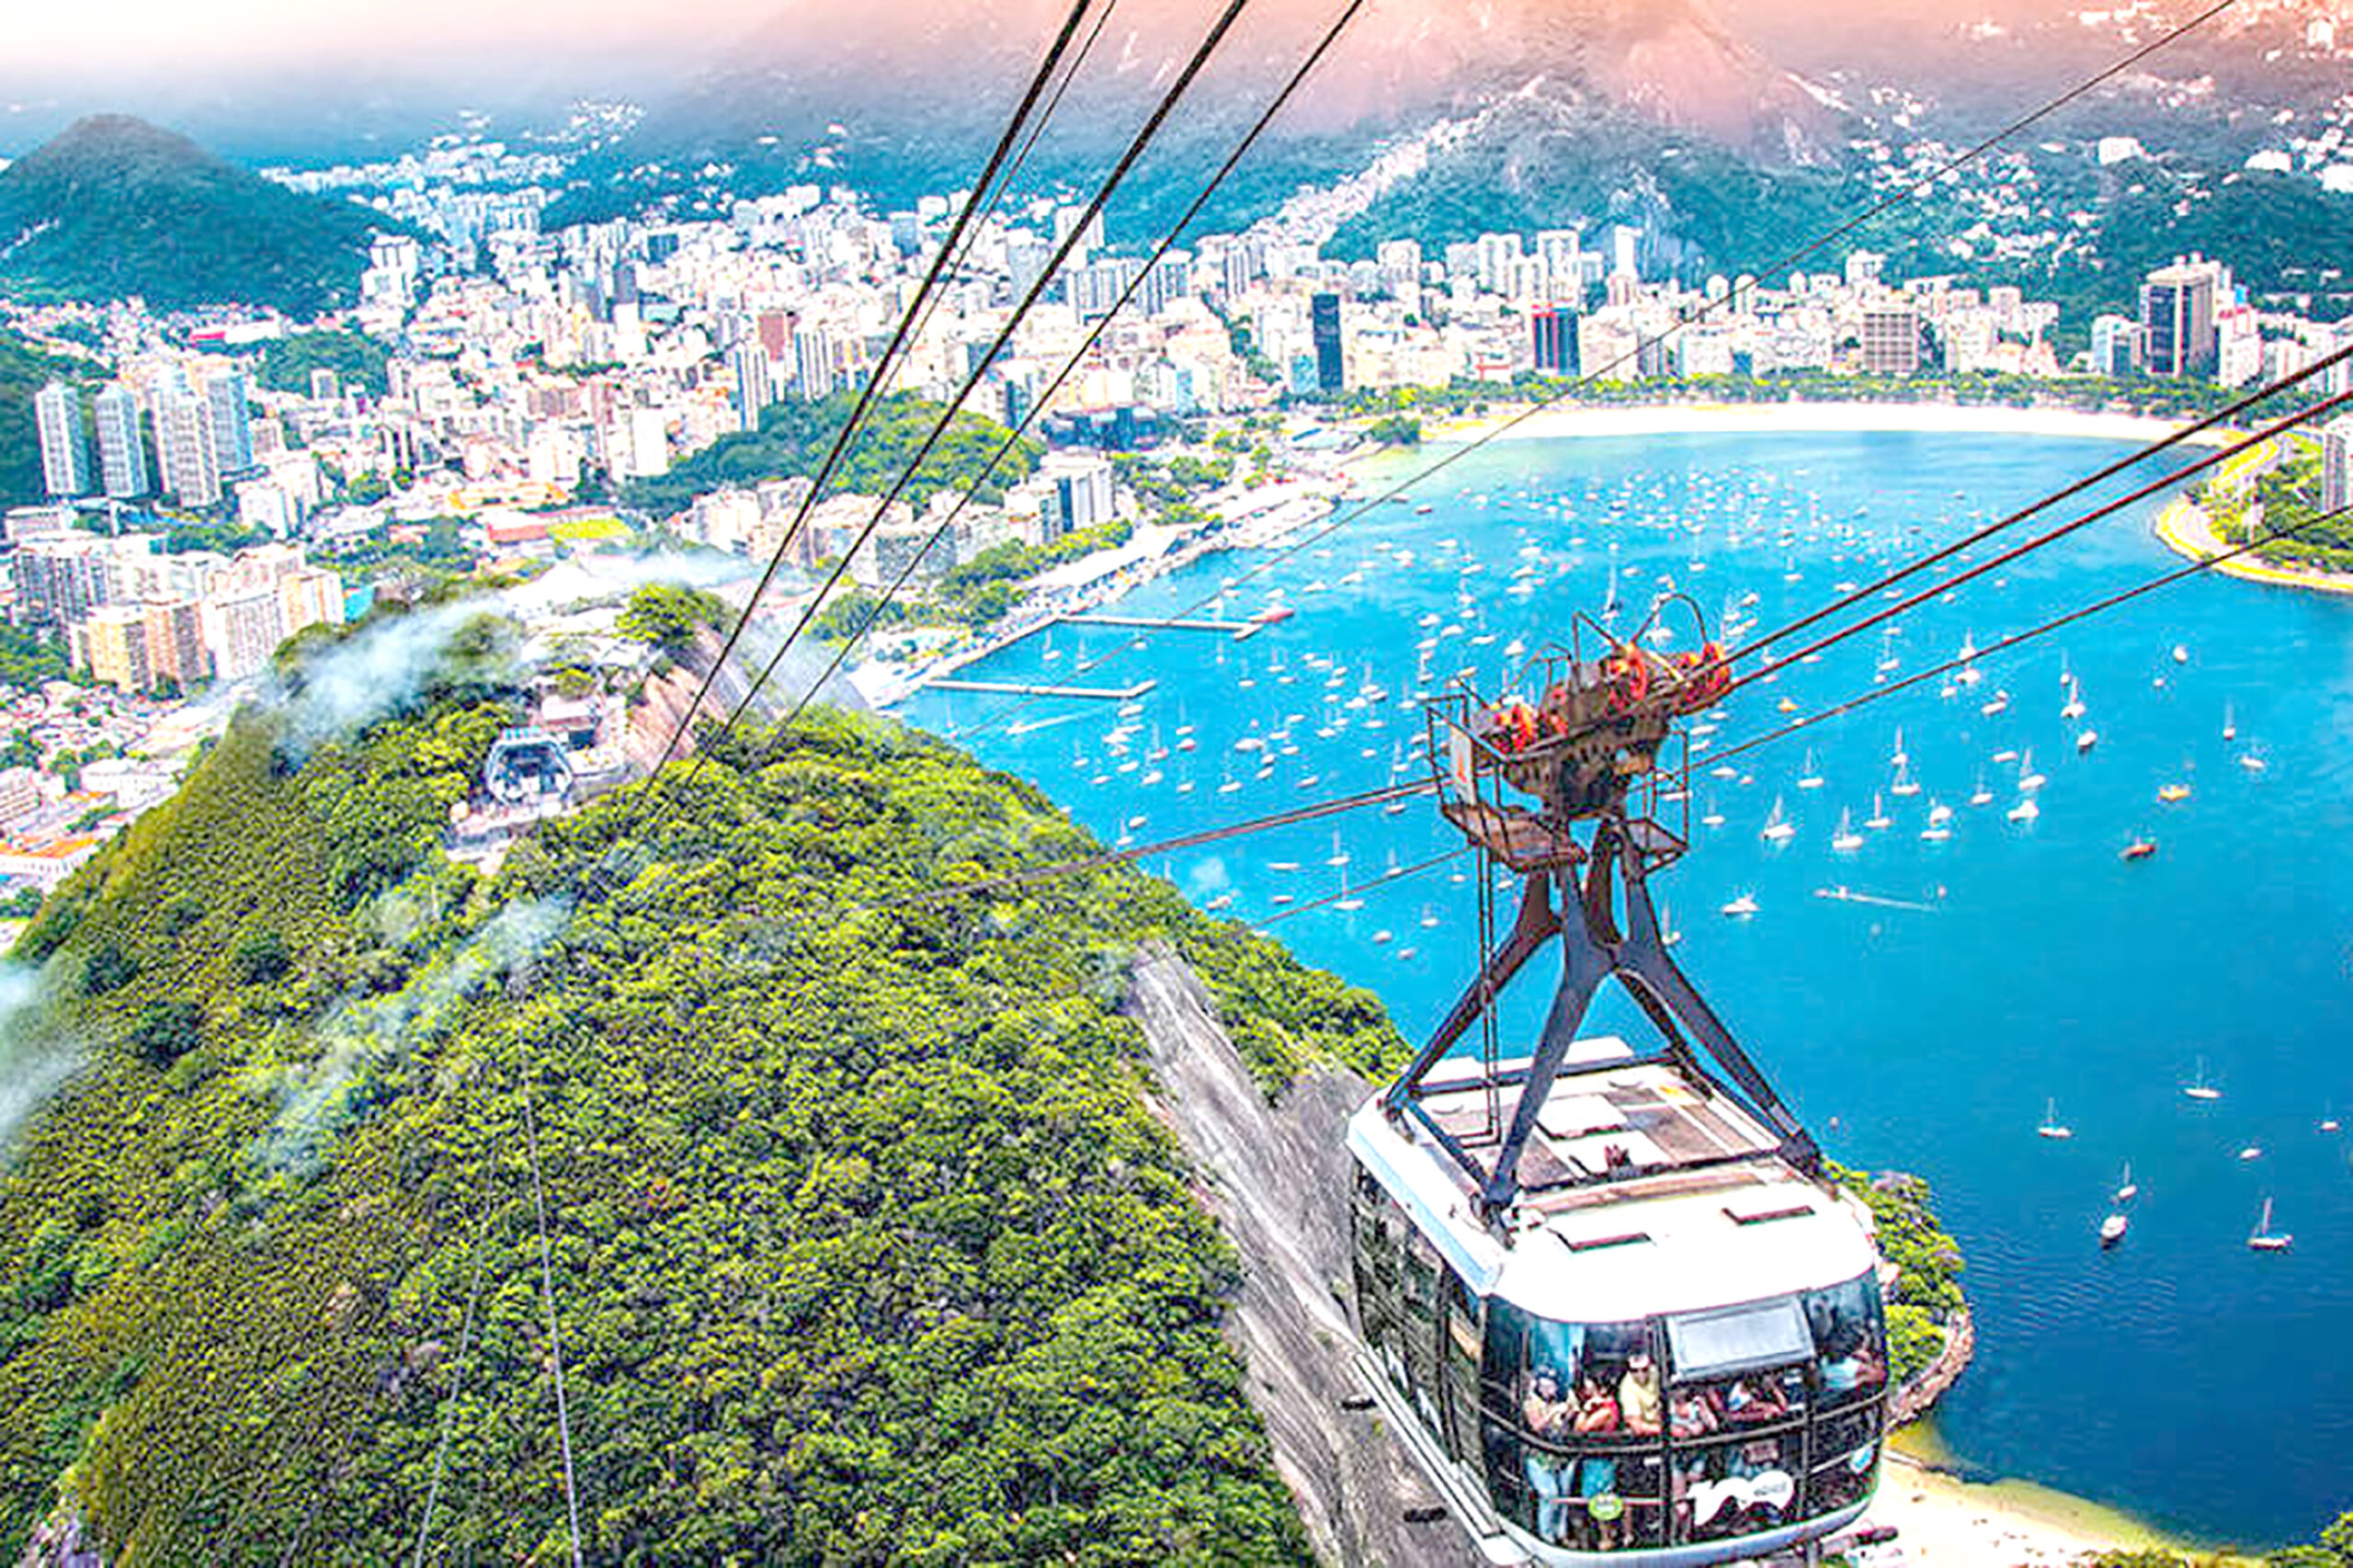 O Turismo é uma atividade pouco exploradadiante do potencial que o Brasil apresenta